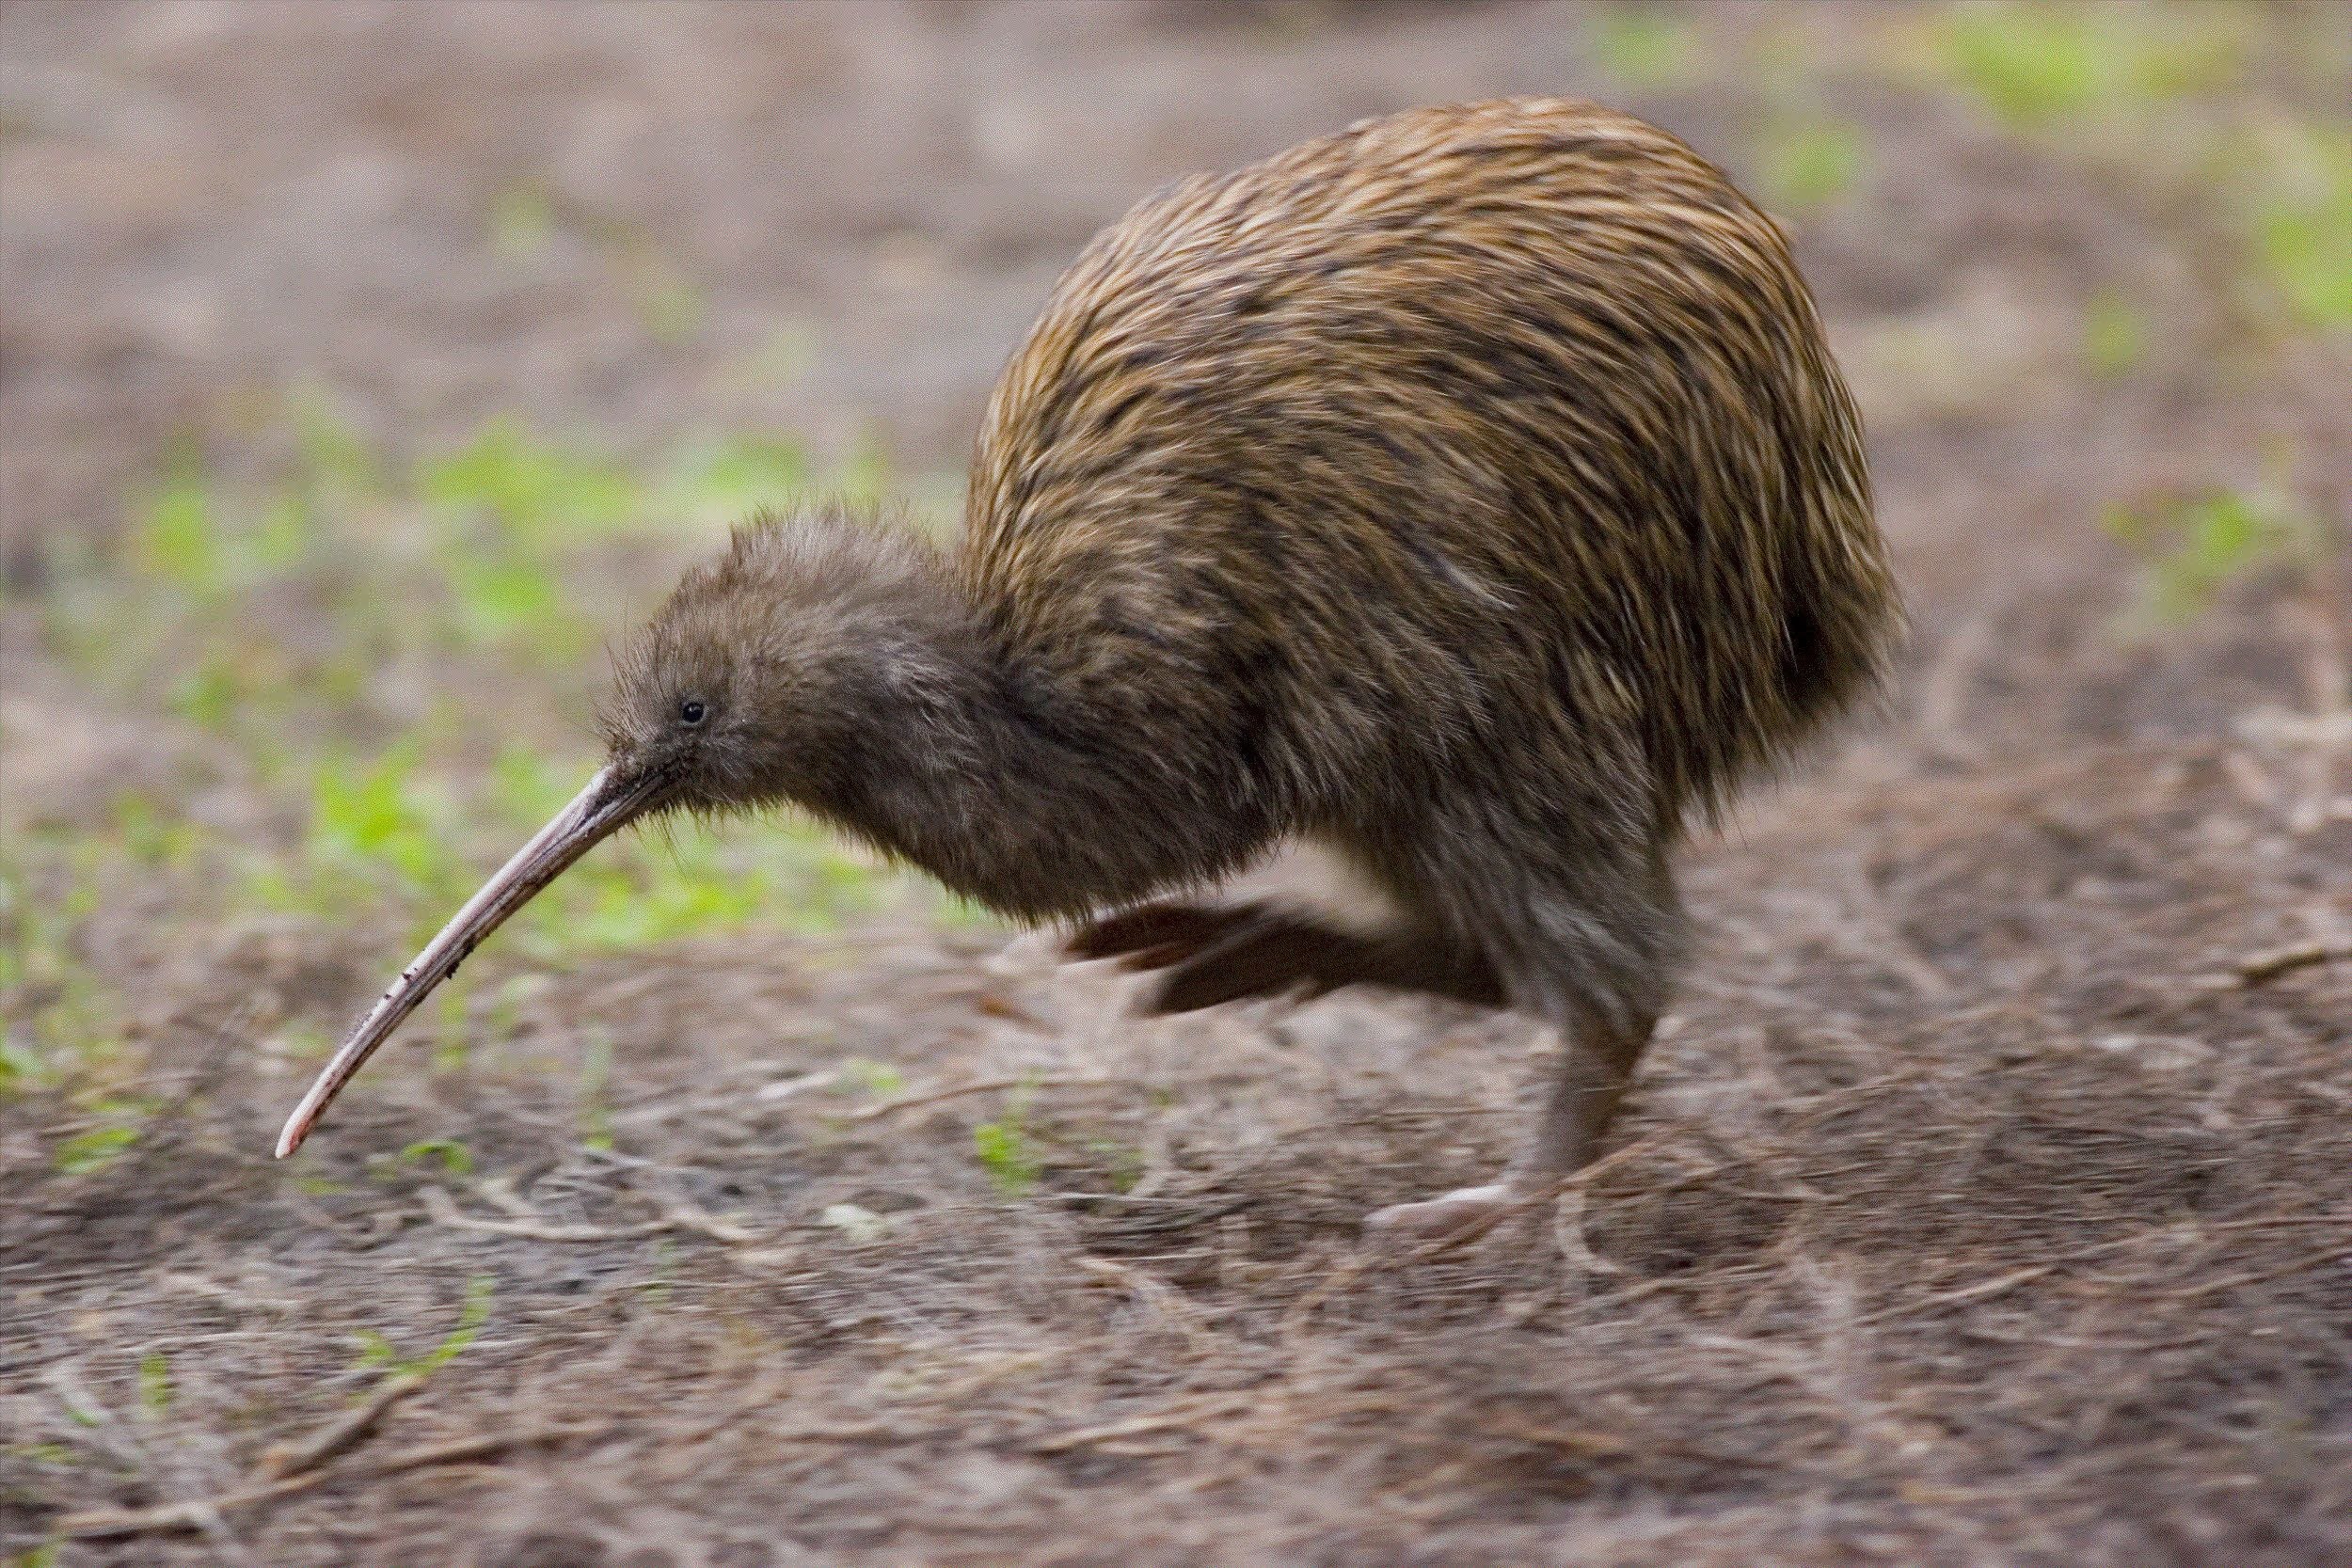 Kiwi orchestra. Нелетающая птица киви. Птица киви в новой Зеландии. Apteryx Australis. Северный бурый киви.